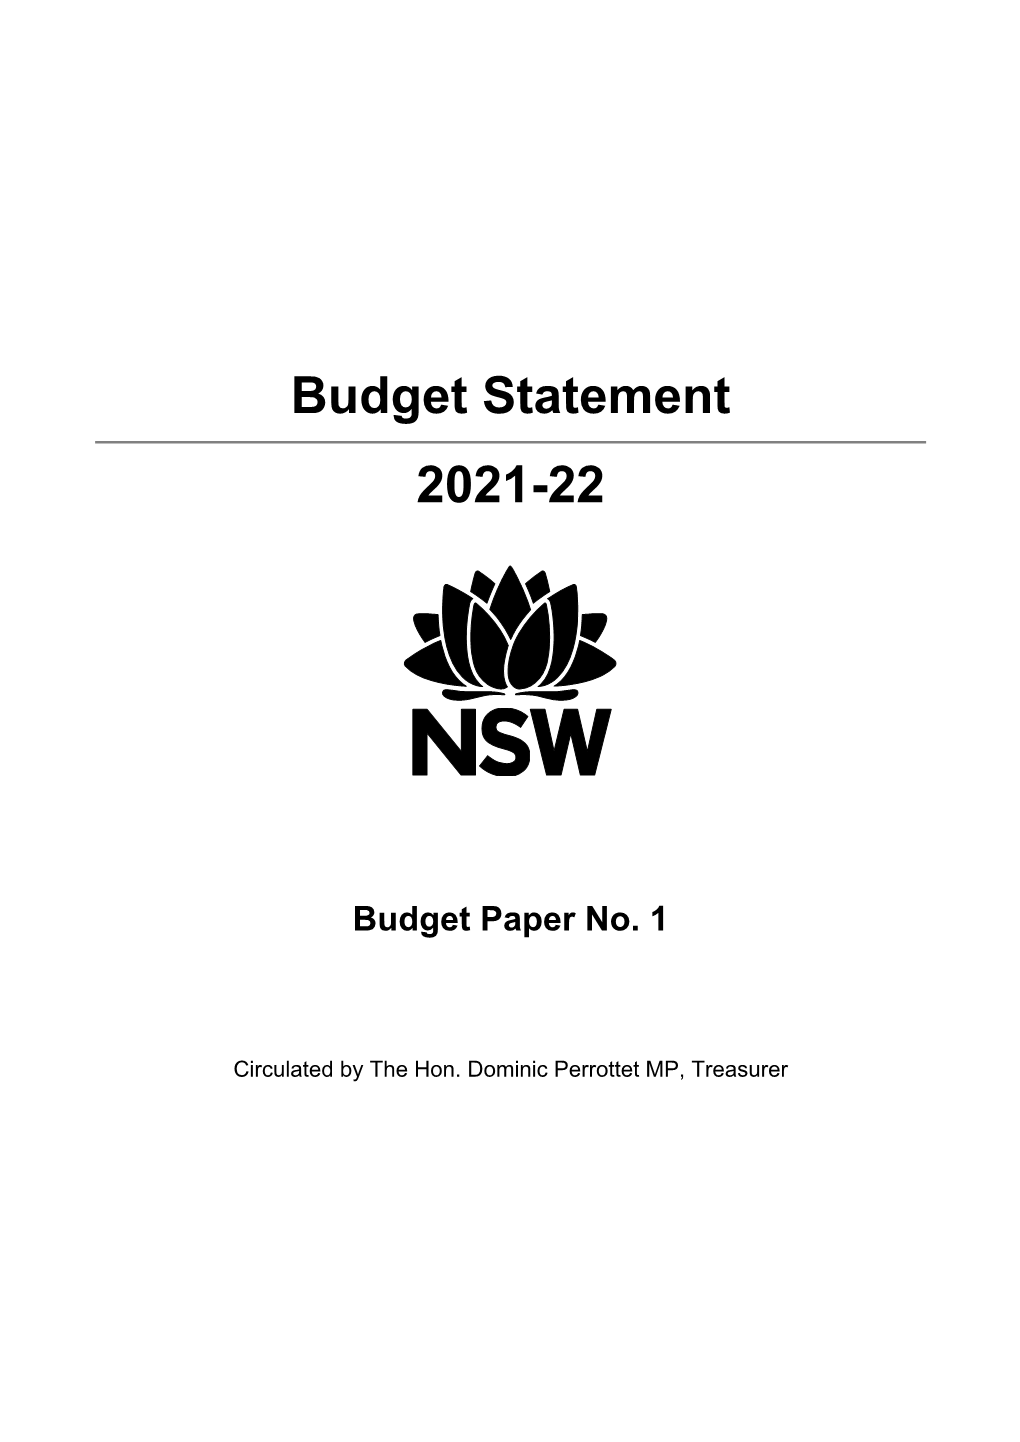 Budget Statement 2021-22